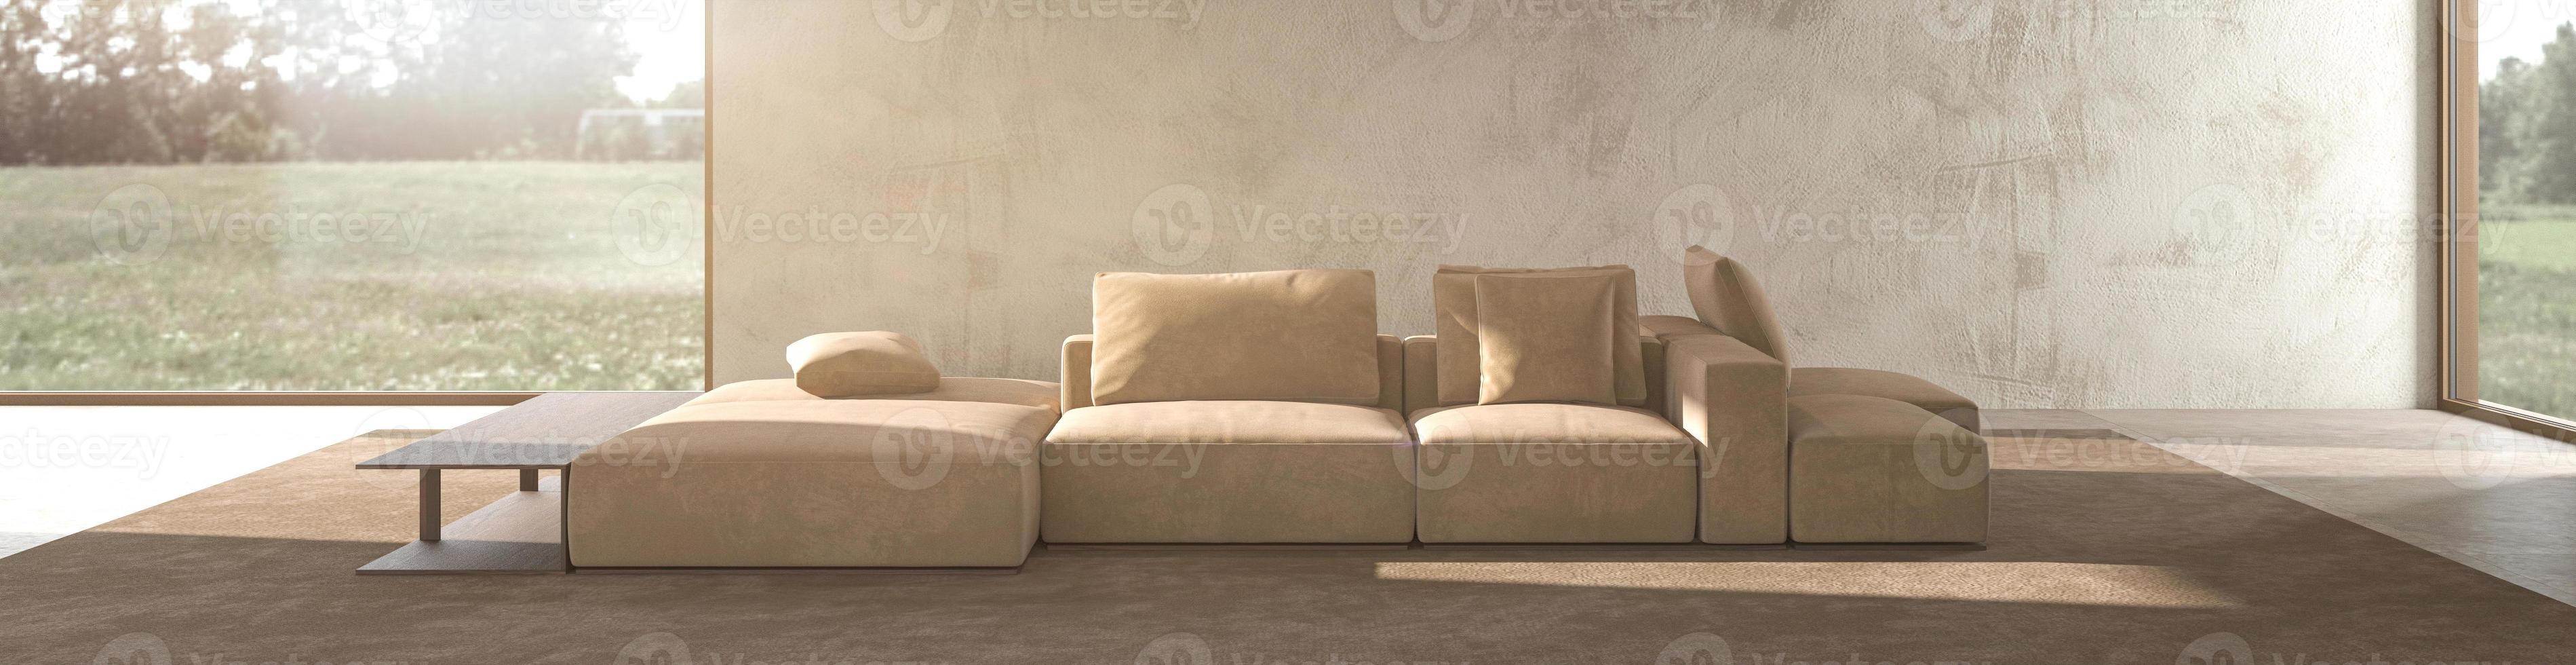 minimalismo interior moderno diseño escandinavo. sala de estar de estudio luminosa con maqueta de pared de yeso. ventanas panorámicas con vista a la naturaleza, sofá modular y gran lámpara de madera. ilustración de representación 3d. foto